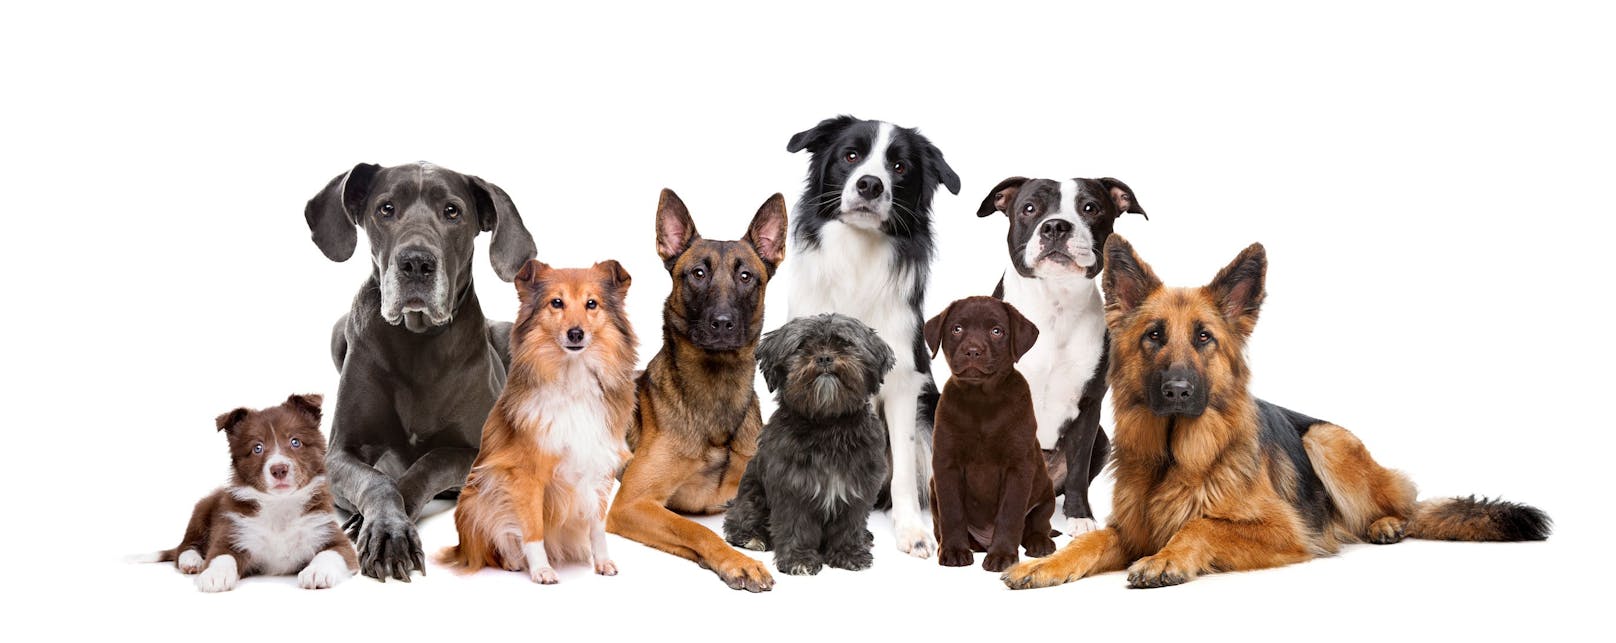 Wir suchen die beliebteste Hunderasse der HEUTE-Leser